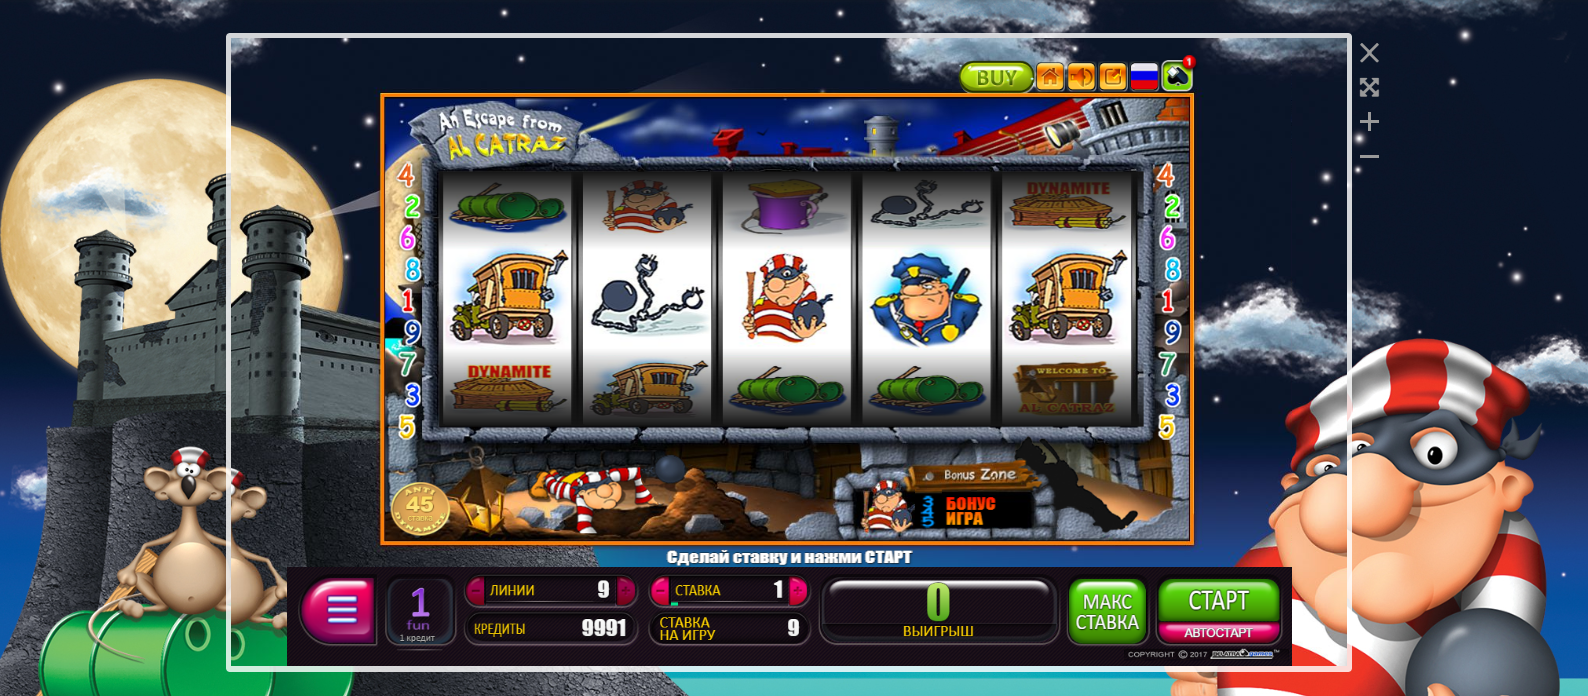 Демо казино играть в автоматы бесплатно gm slots игровые автоматы официальный сайт рейтинг слотов рф